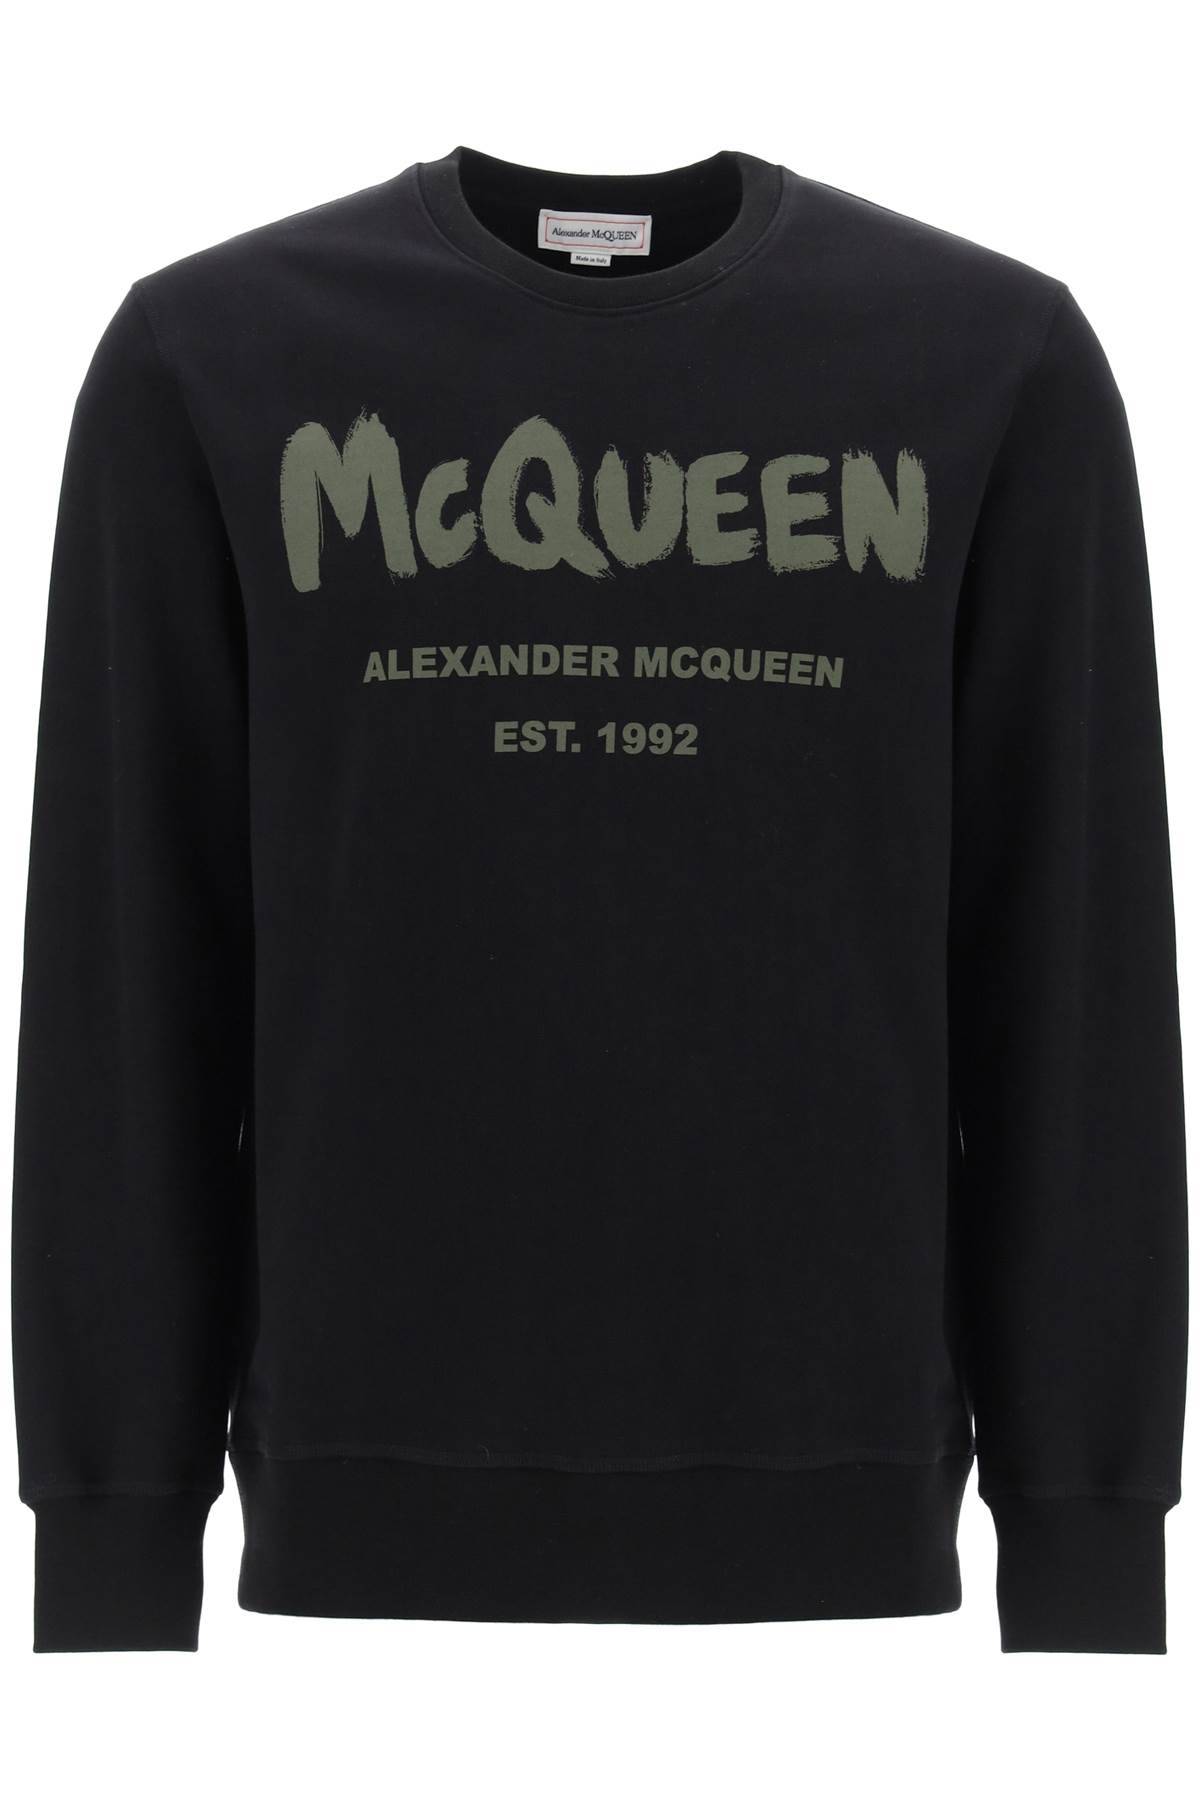 Alexander McQueen ALEXANDER MCQUEEN mcqueen graffiti sweatshirt